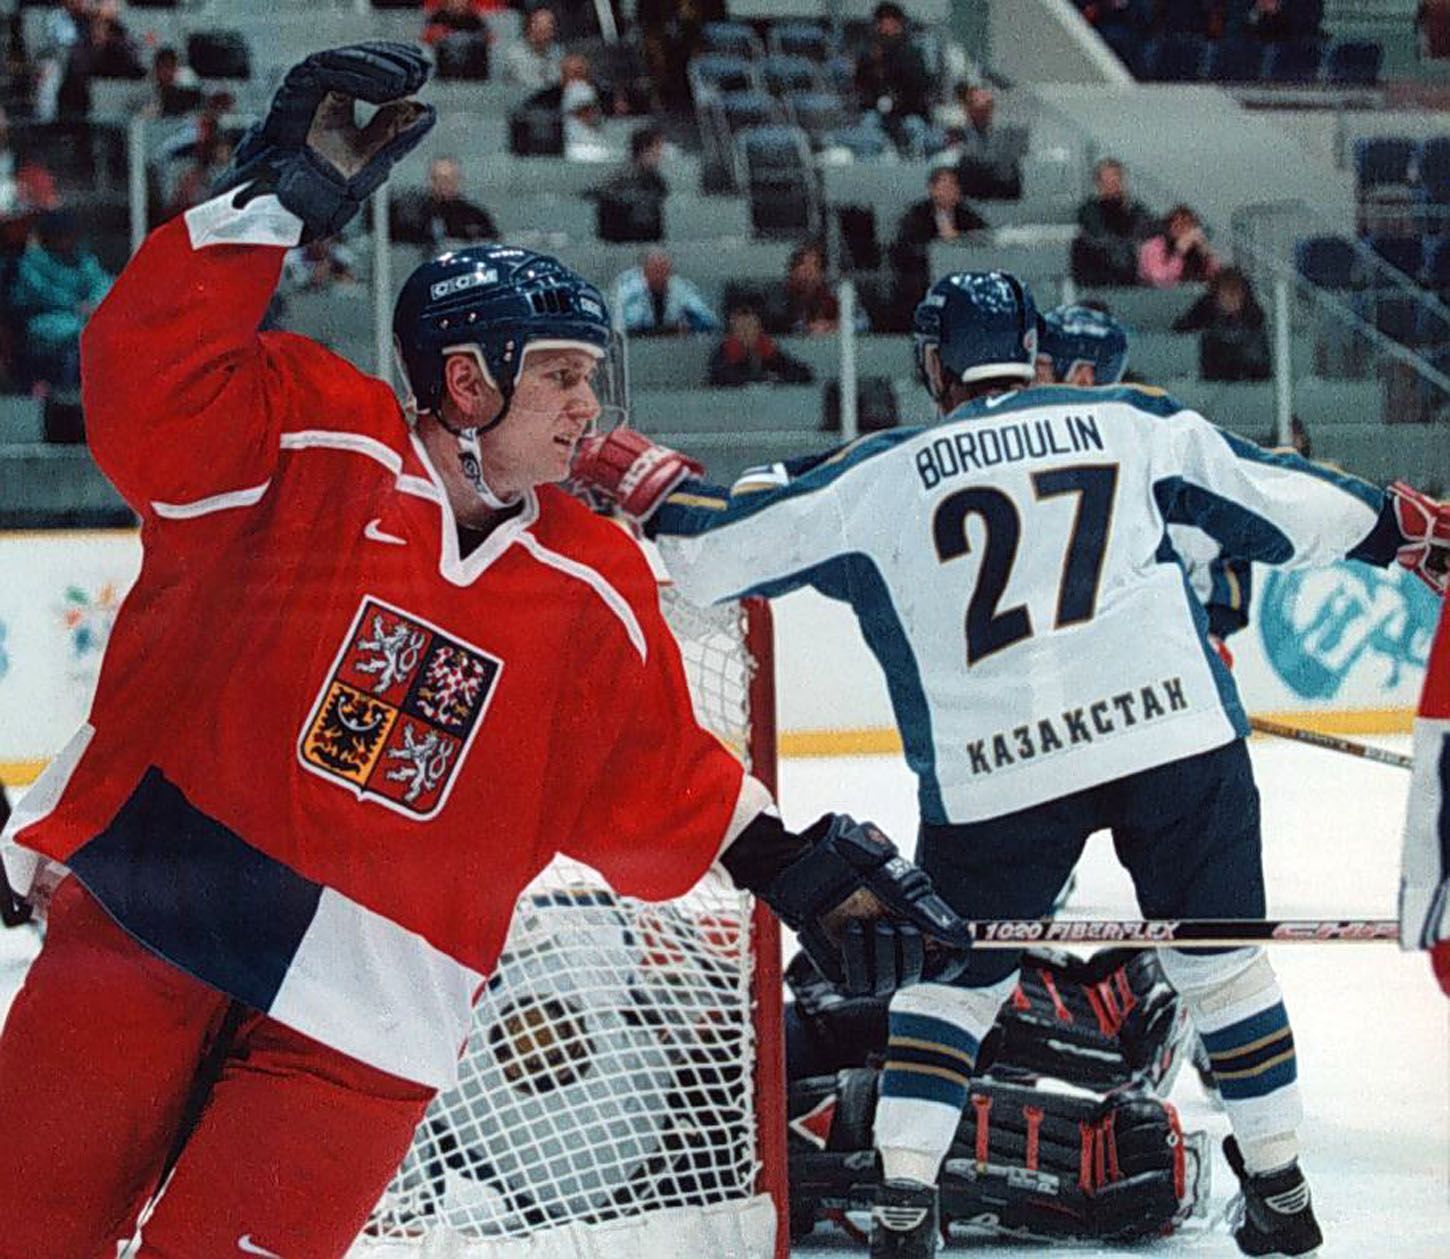 Archivní snímky z ZOH Nagano 1998 - hokej. Jan Čaloun